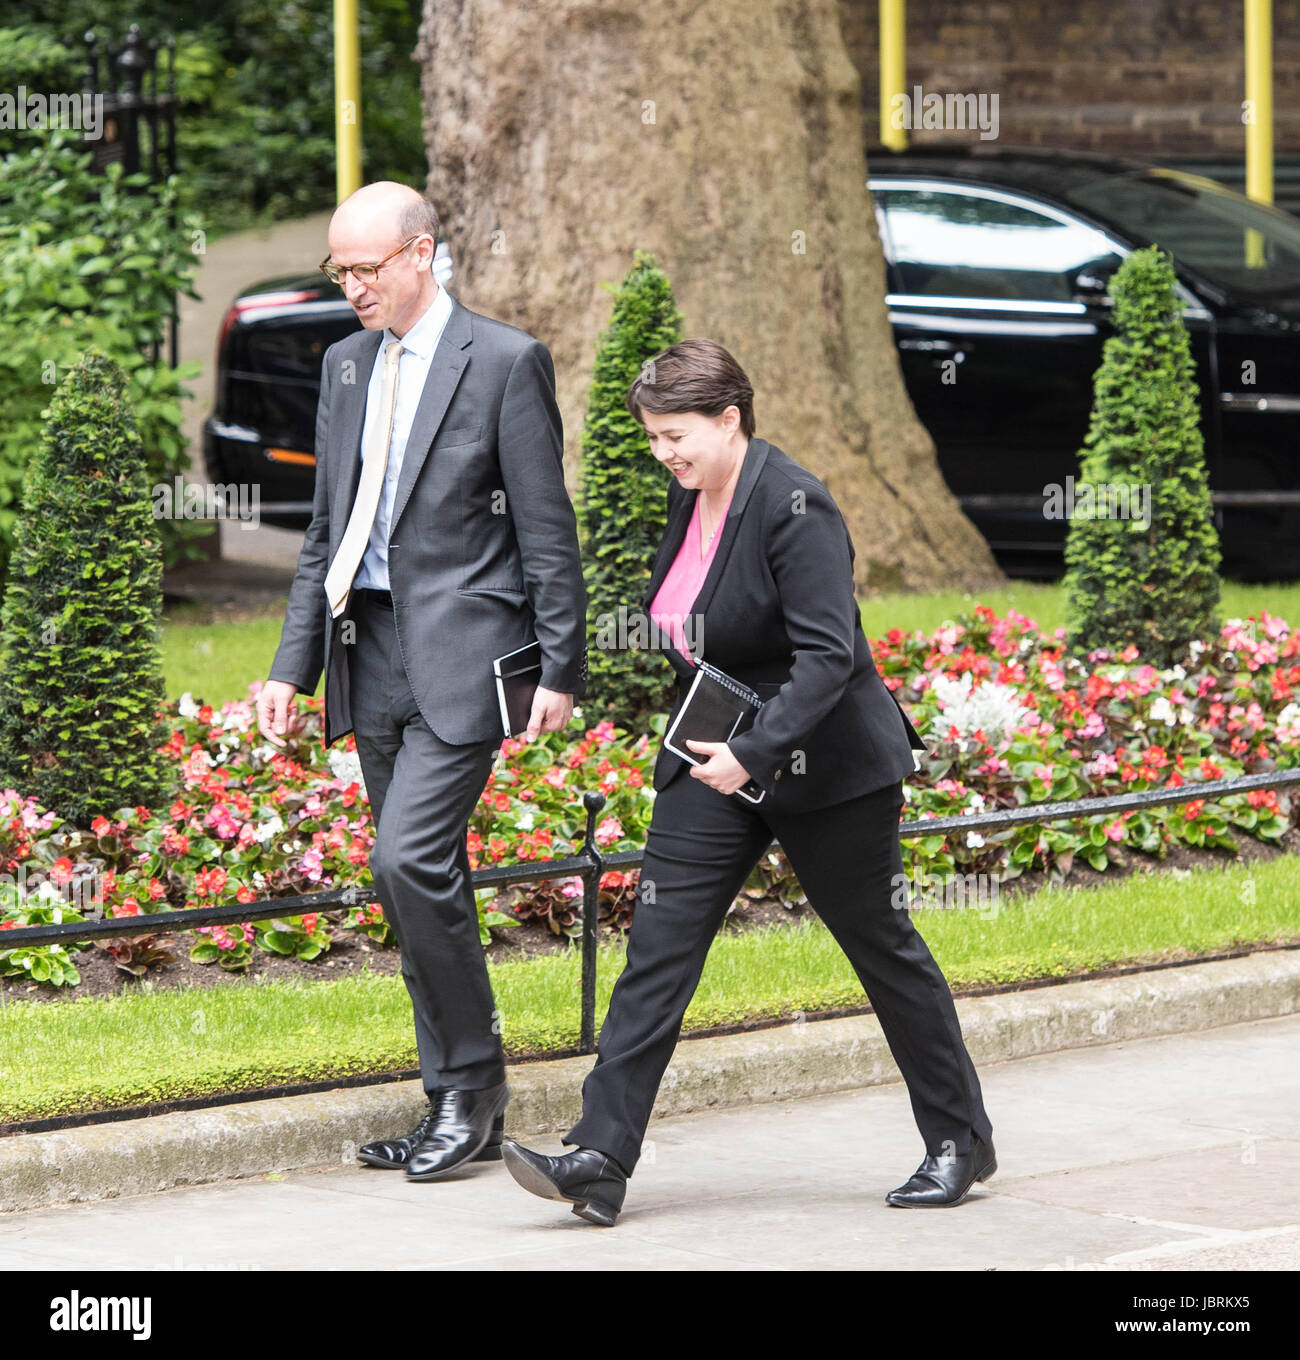 Londres, Royaume-Uni. Jun 12, 2017. Ruth Davidson, chef de la Scottish conservateurs arrive à Downing Street pour une réunion avec le premier ministre, après l'élection générale, Crédit : Ian Davidson/Alamy Live News Banque D'Images